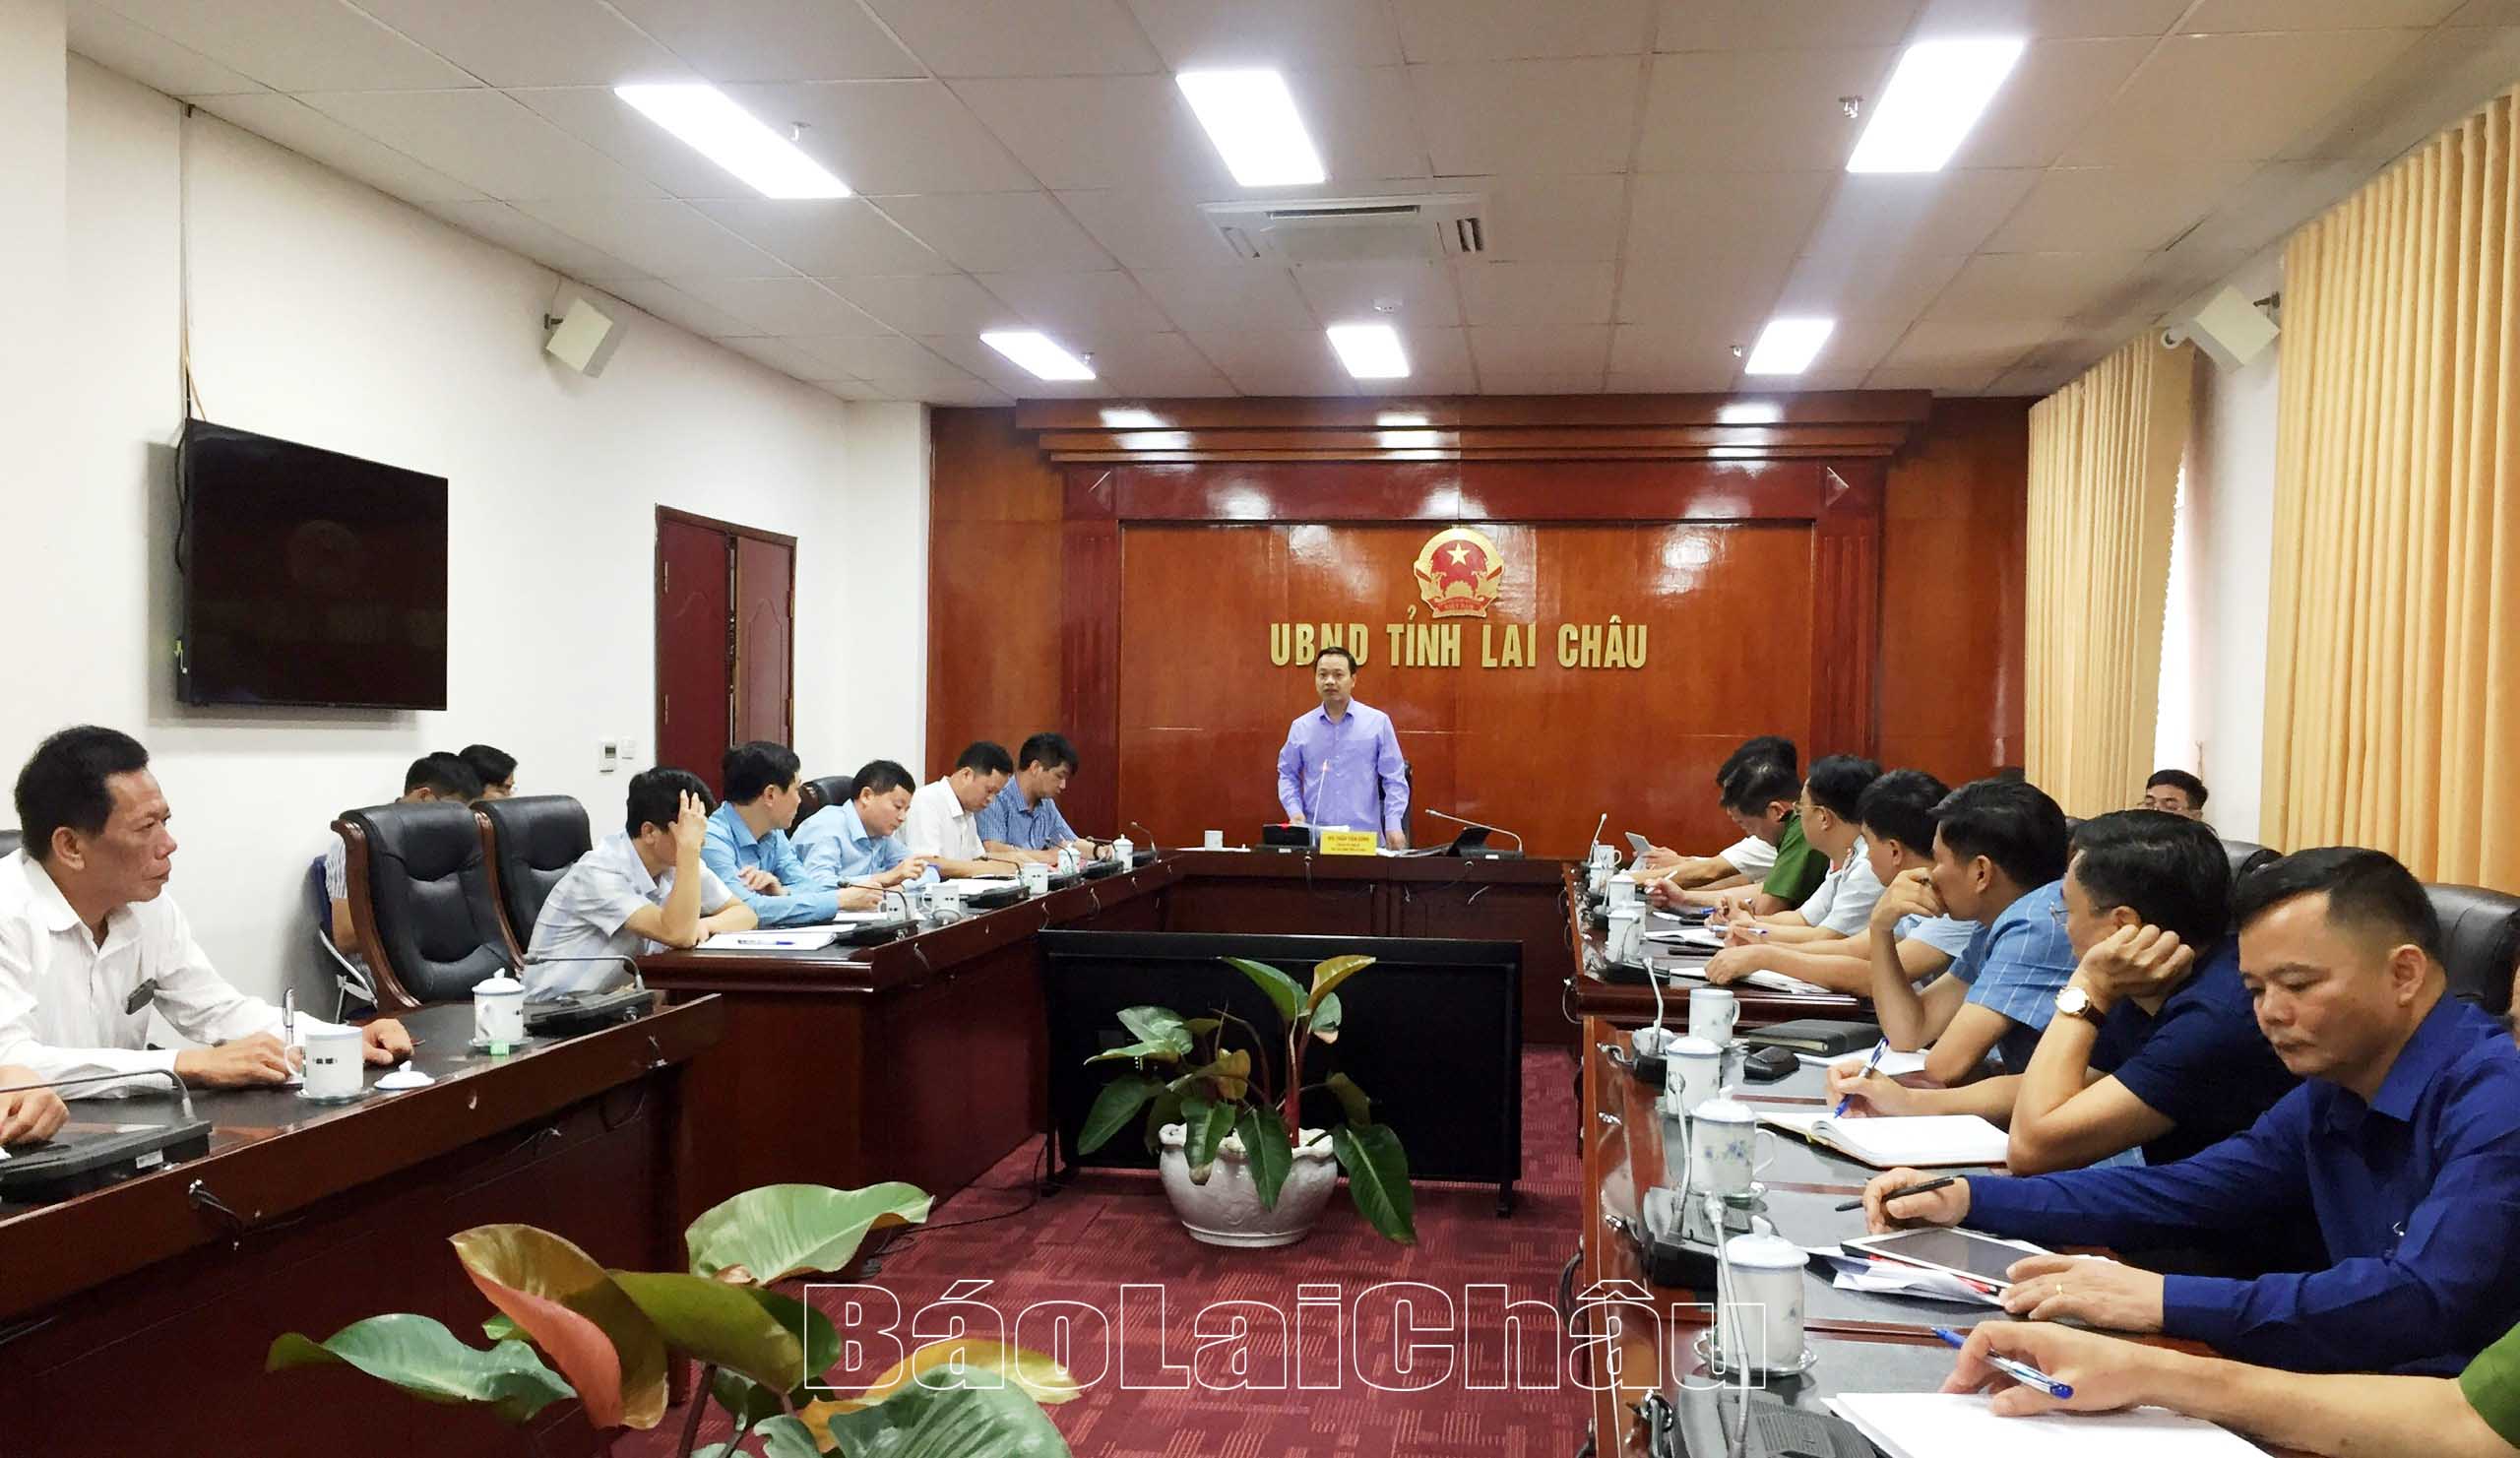 Đồng chí Trần Tiến Dũng - Phó Bí thư Tỉnh ủy, Chủ tịch UBND tỉnh phát biểu tại cuộc họp.